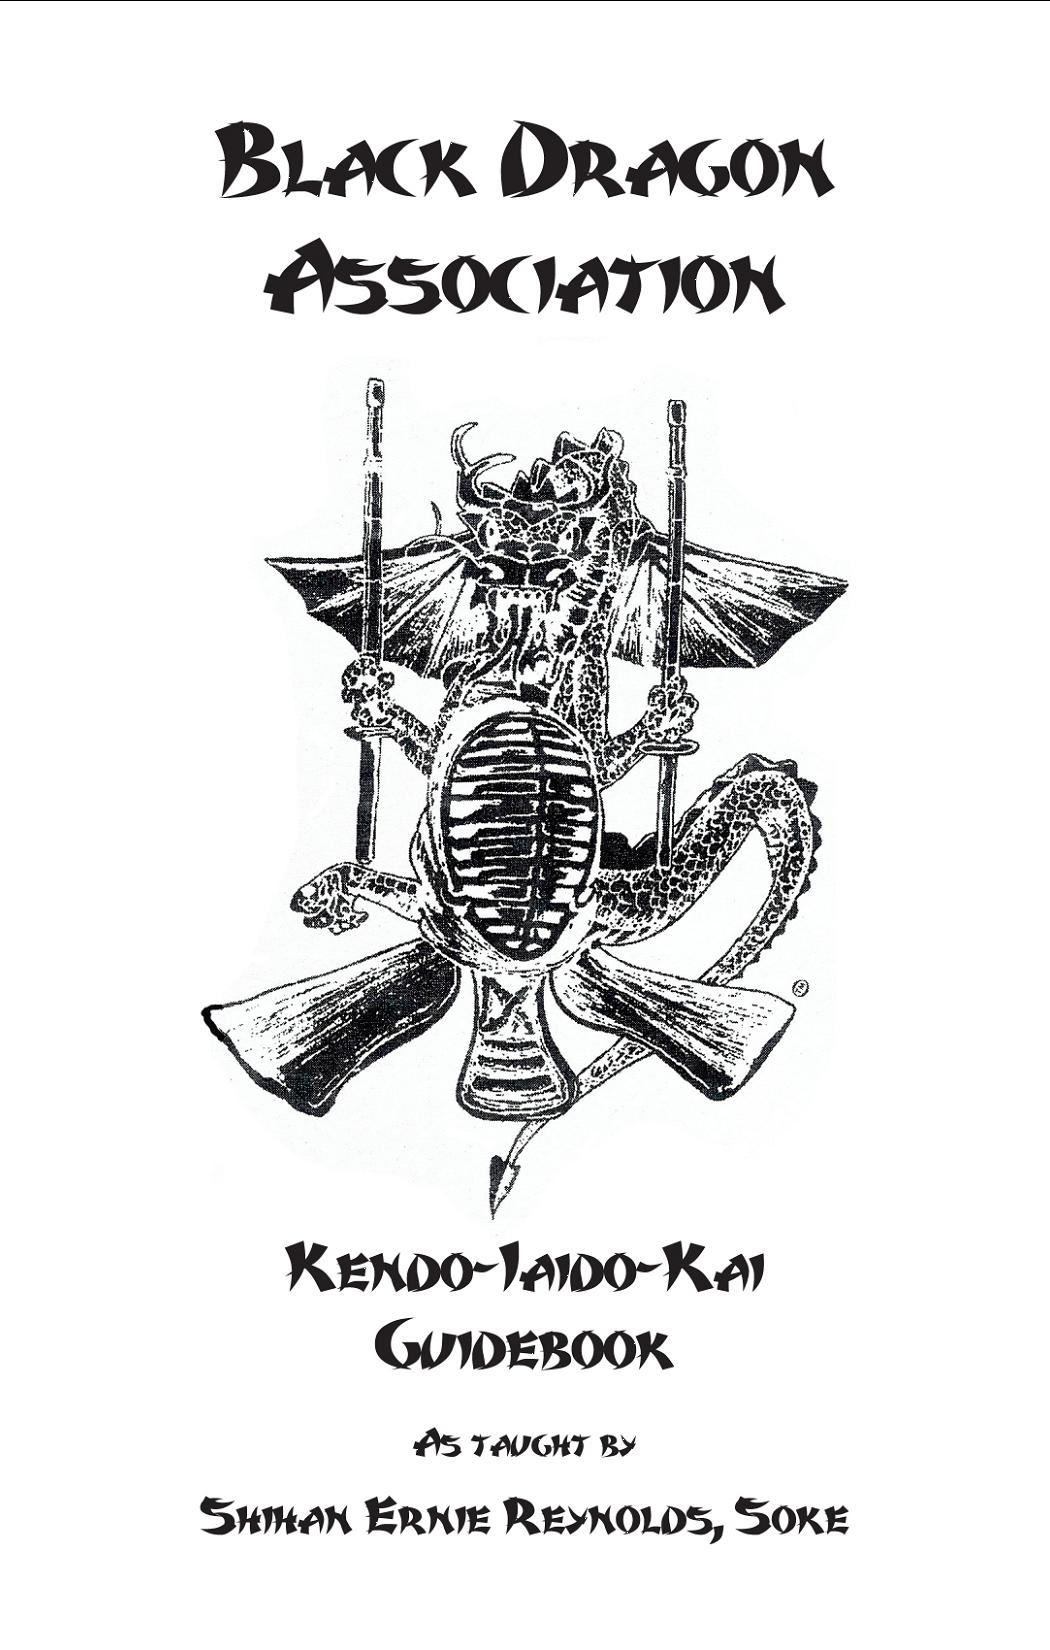 BLACK DRAGON KENDO KAI